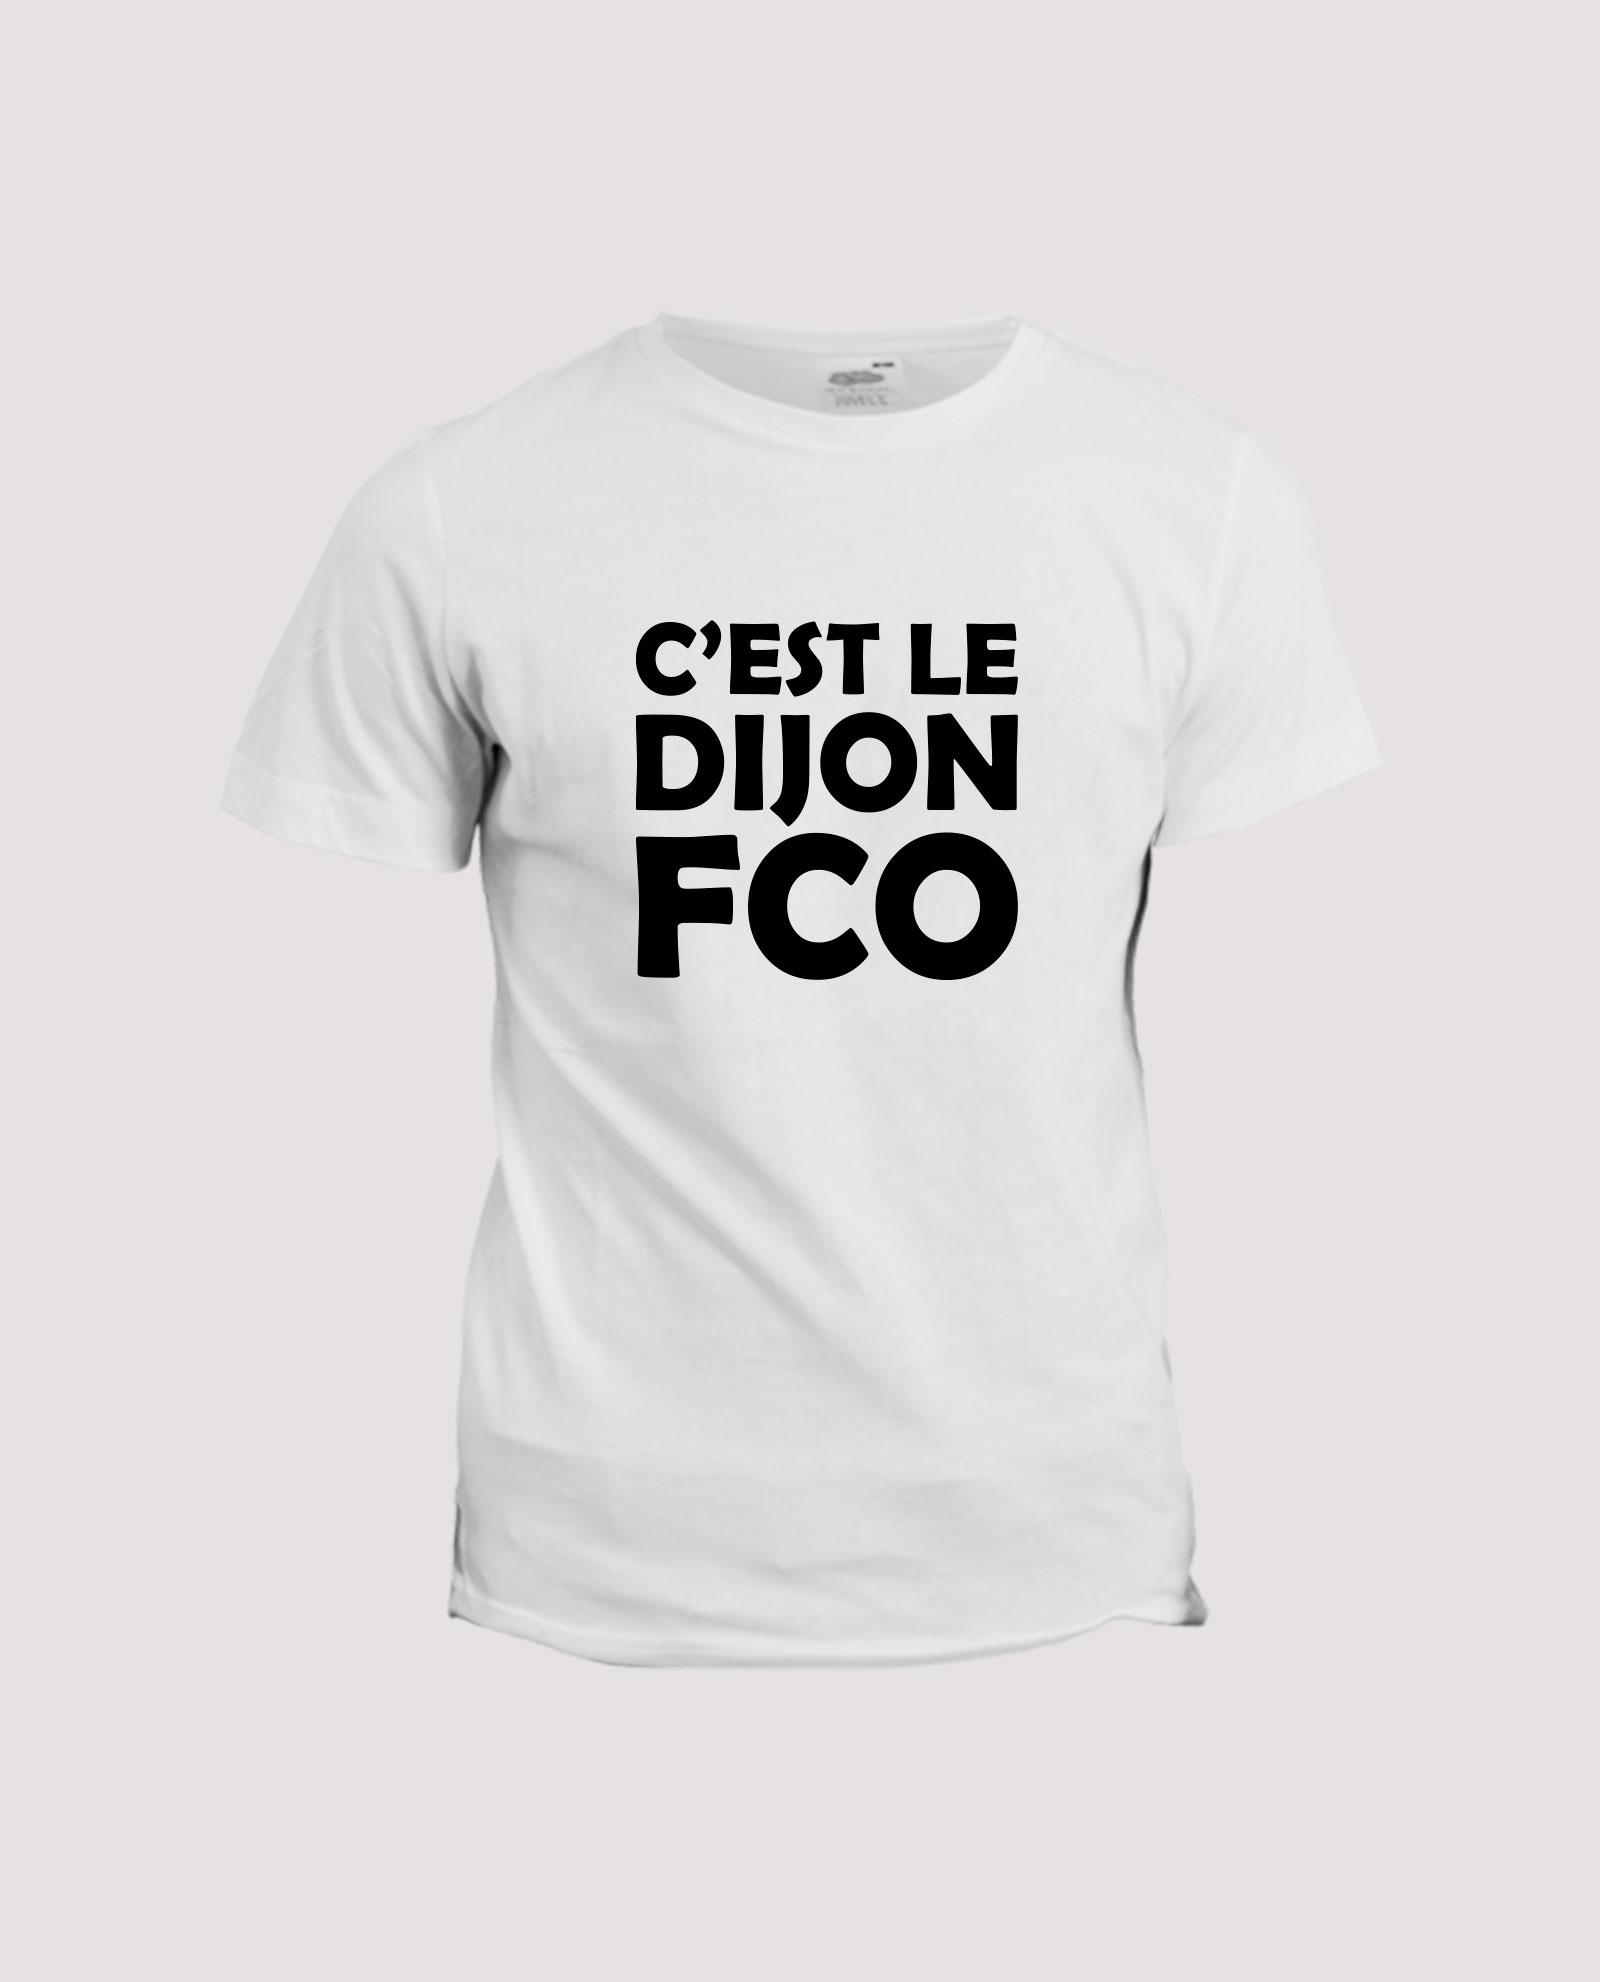 la-ligne-shop-t-shirt-chant-supporter-club-football-dijon-c-est-le-dijon-fco